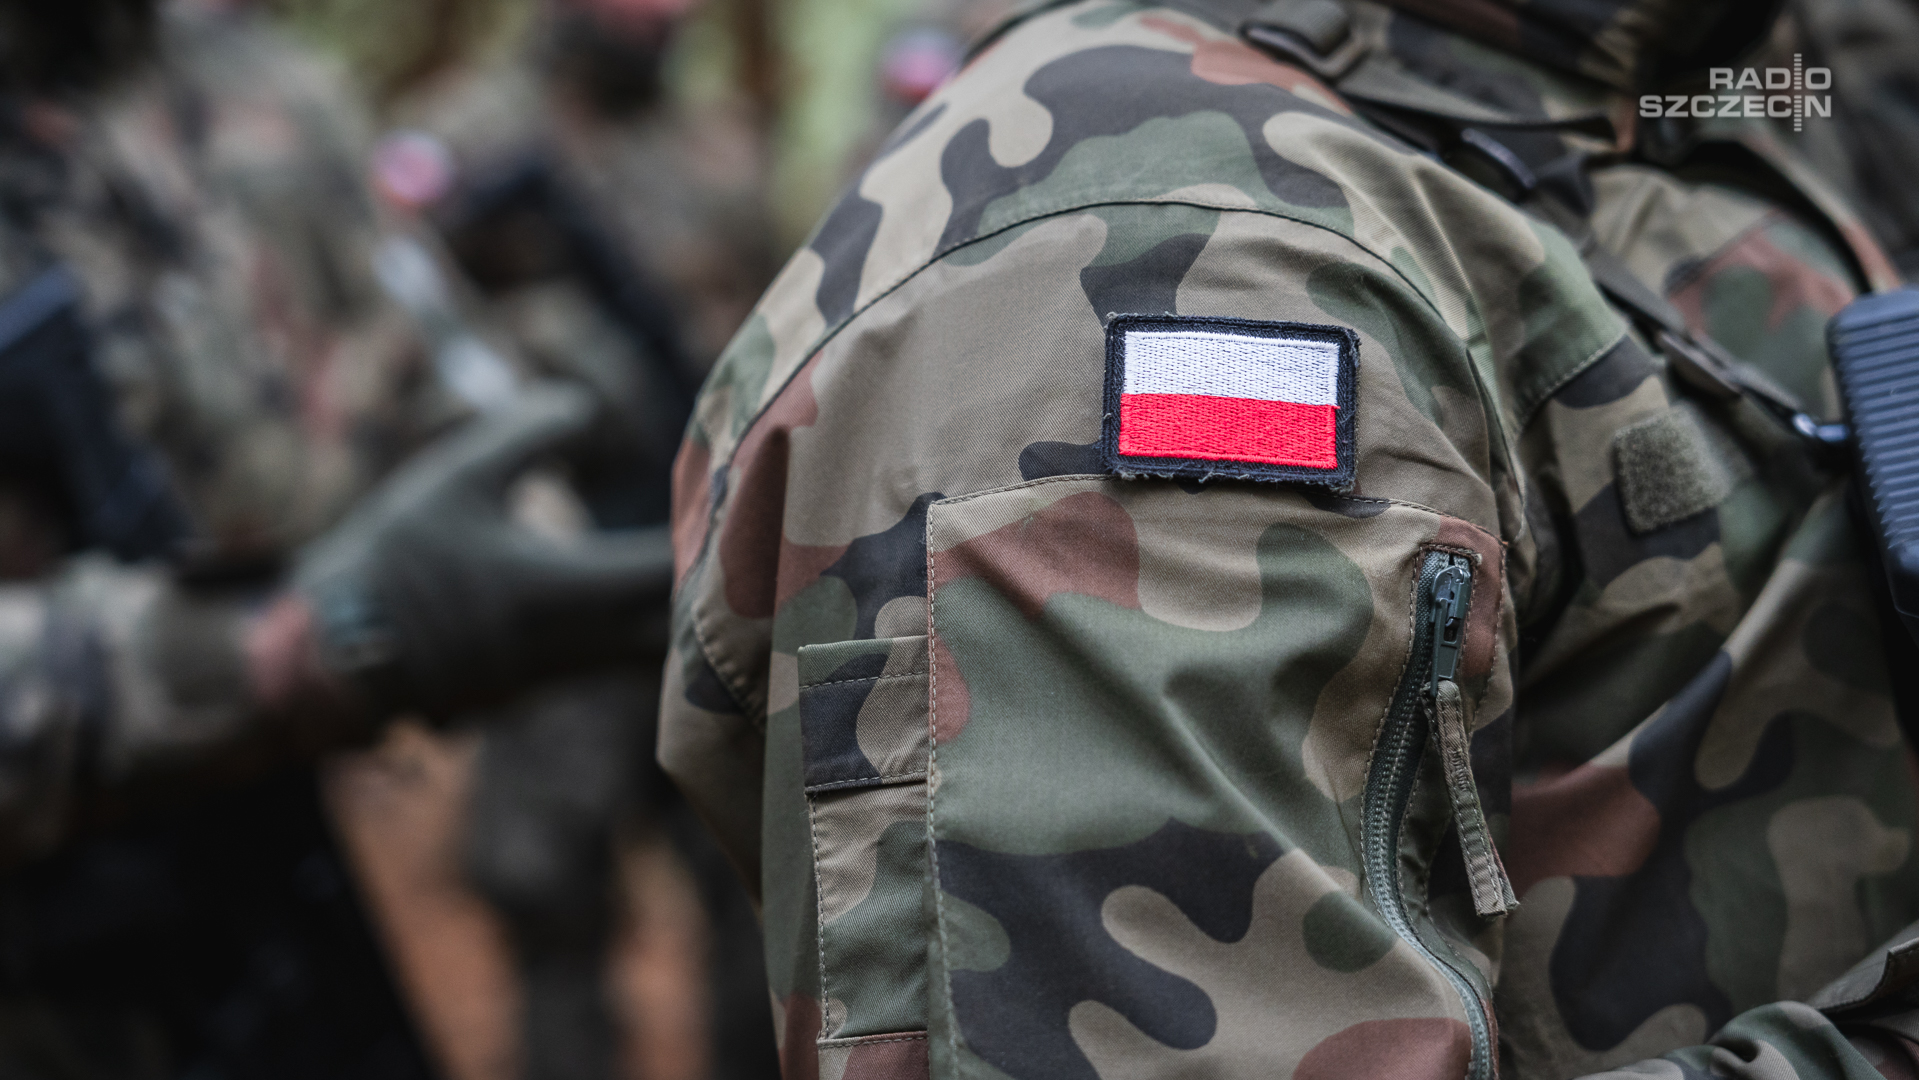 Generał Komornicki: Polska musi się zbroić, a czasu jest niewiele